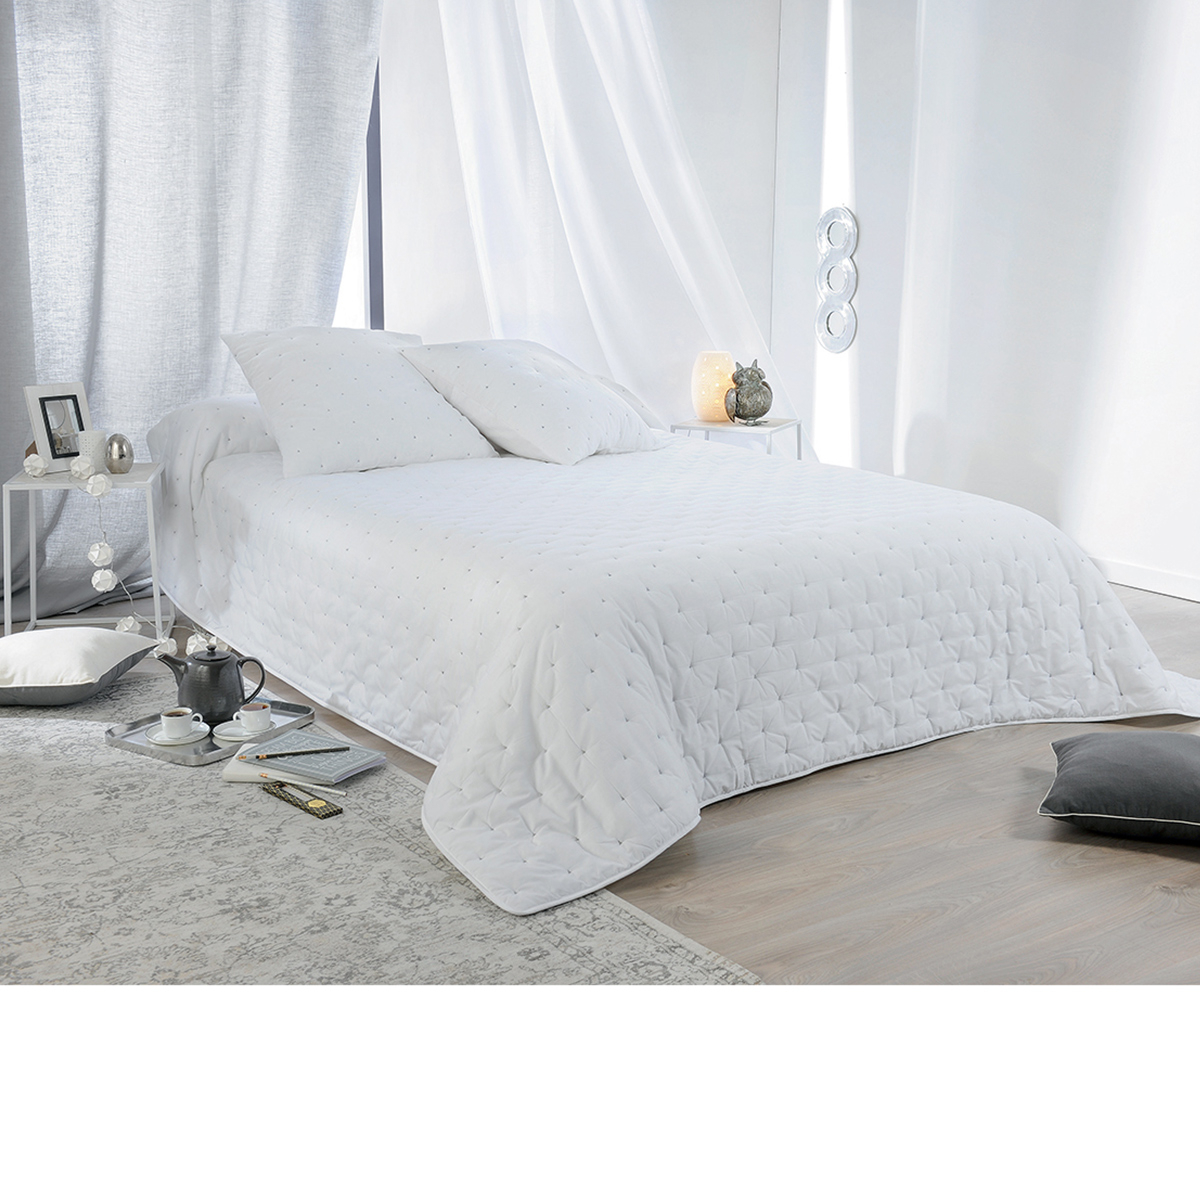 Couvre lit aspect matelassé coton blanc 240x180